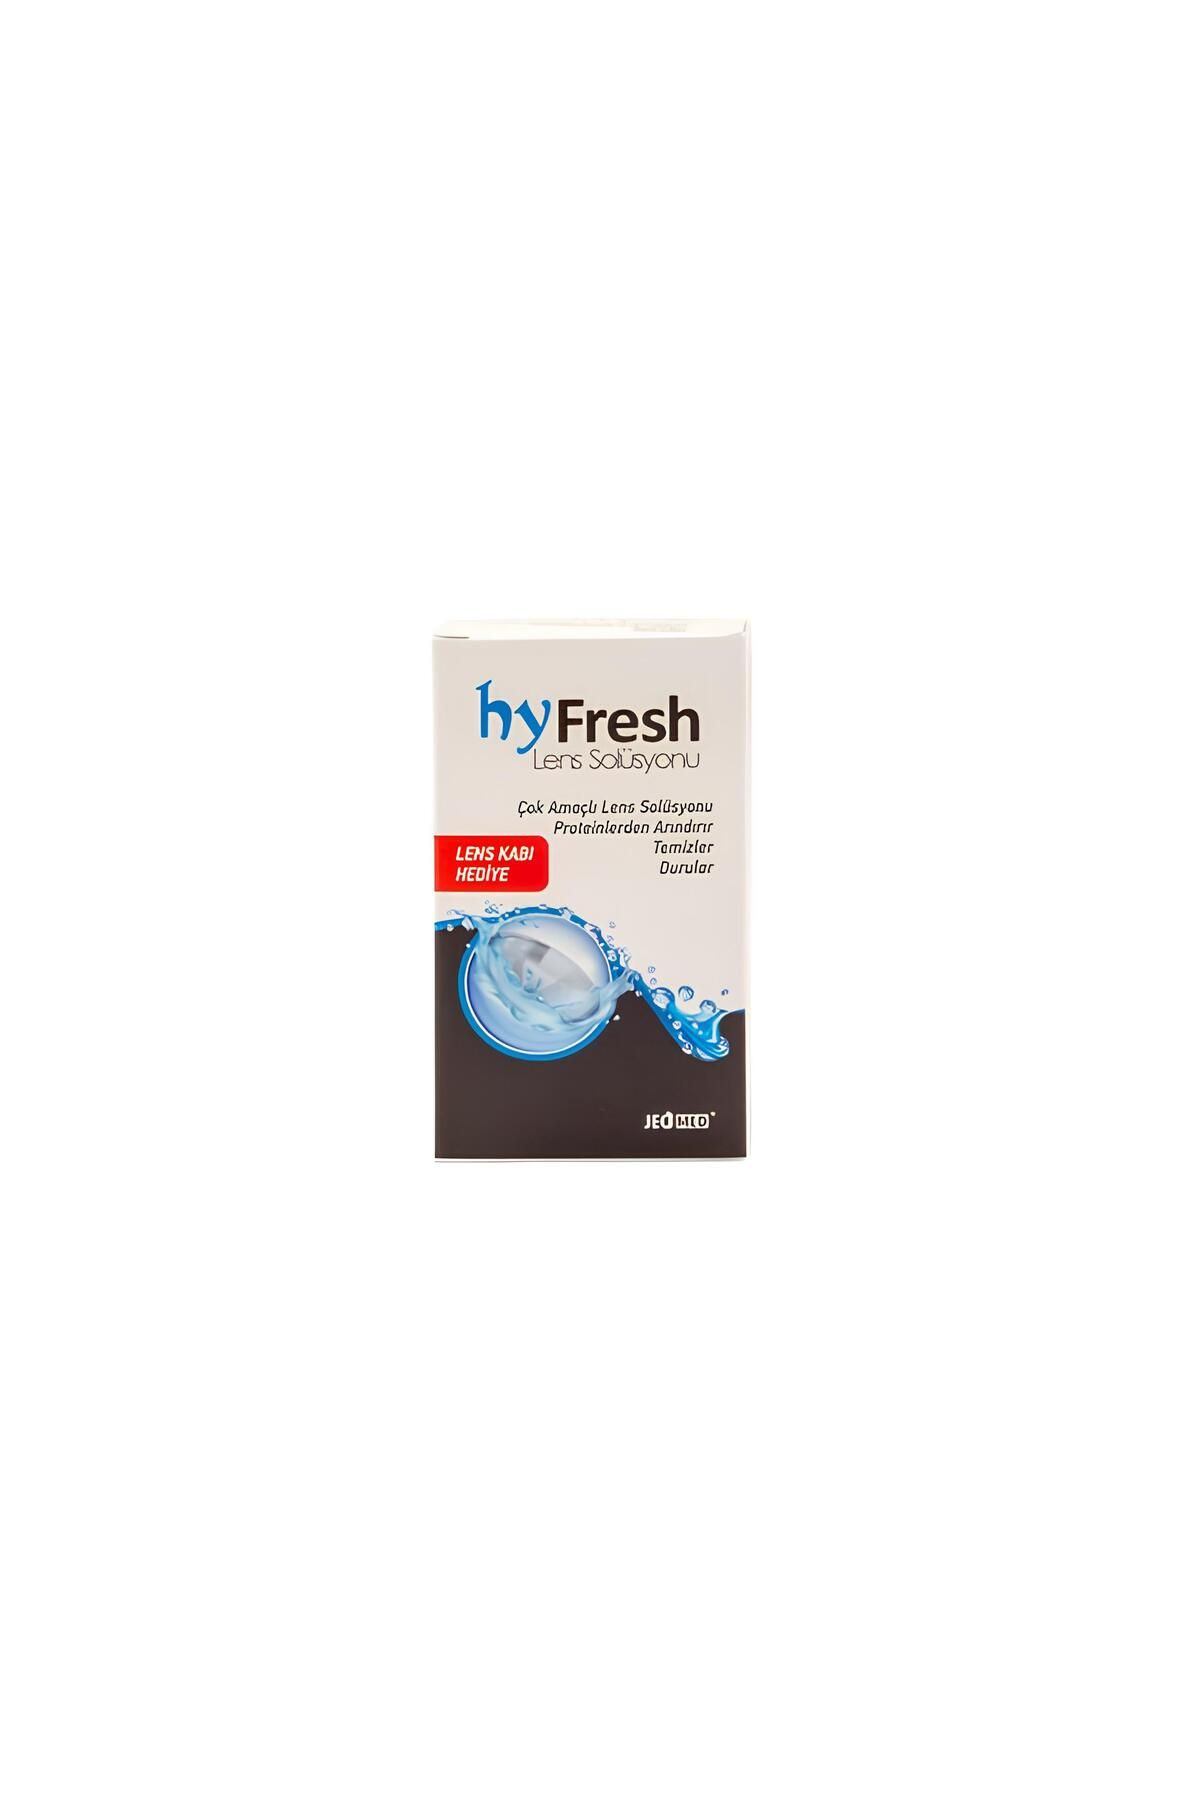 Hyfresh Hy Fresh 60 ml Lens Solüsyonu Skt. 04/26